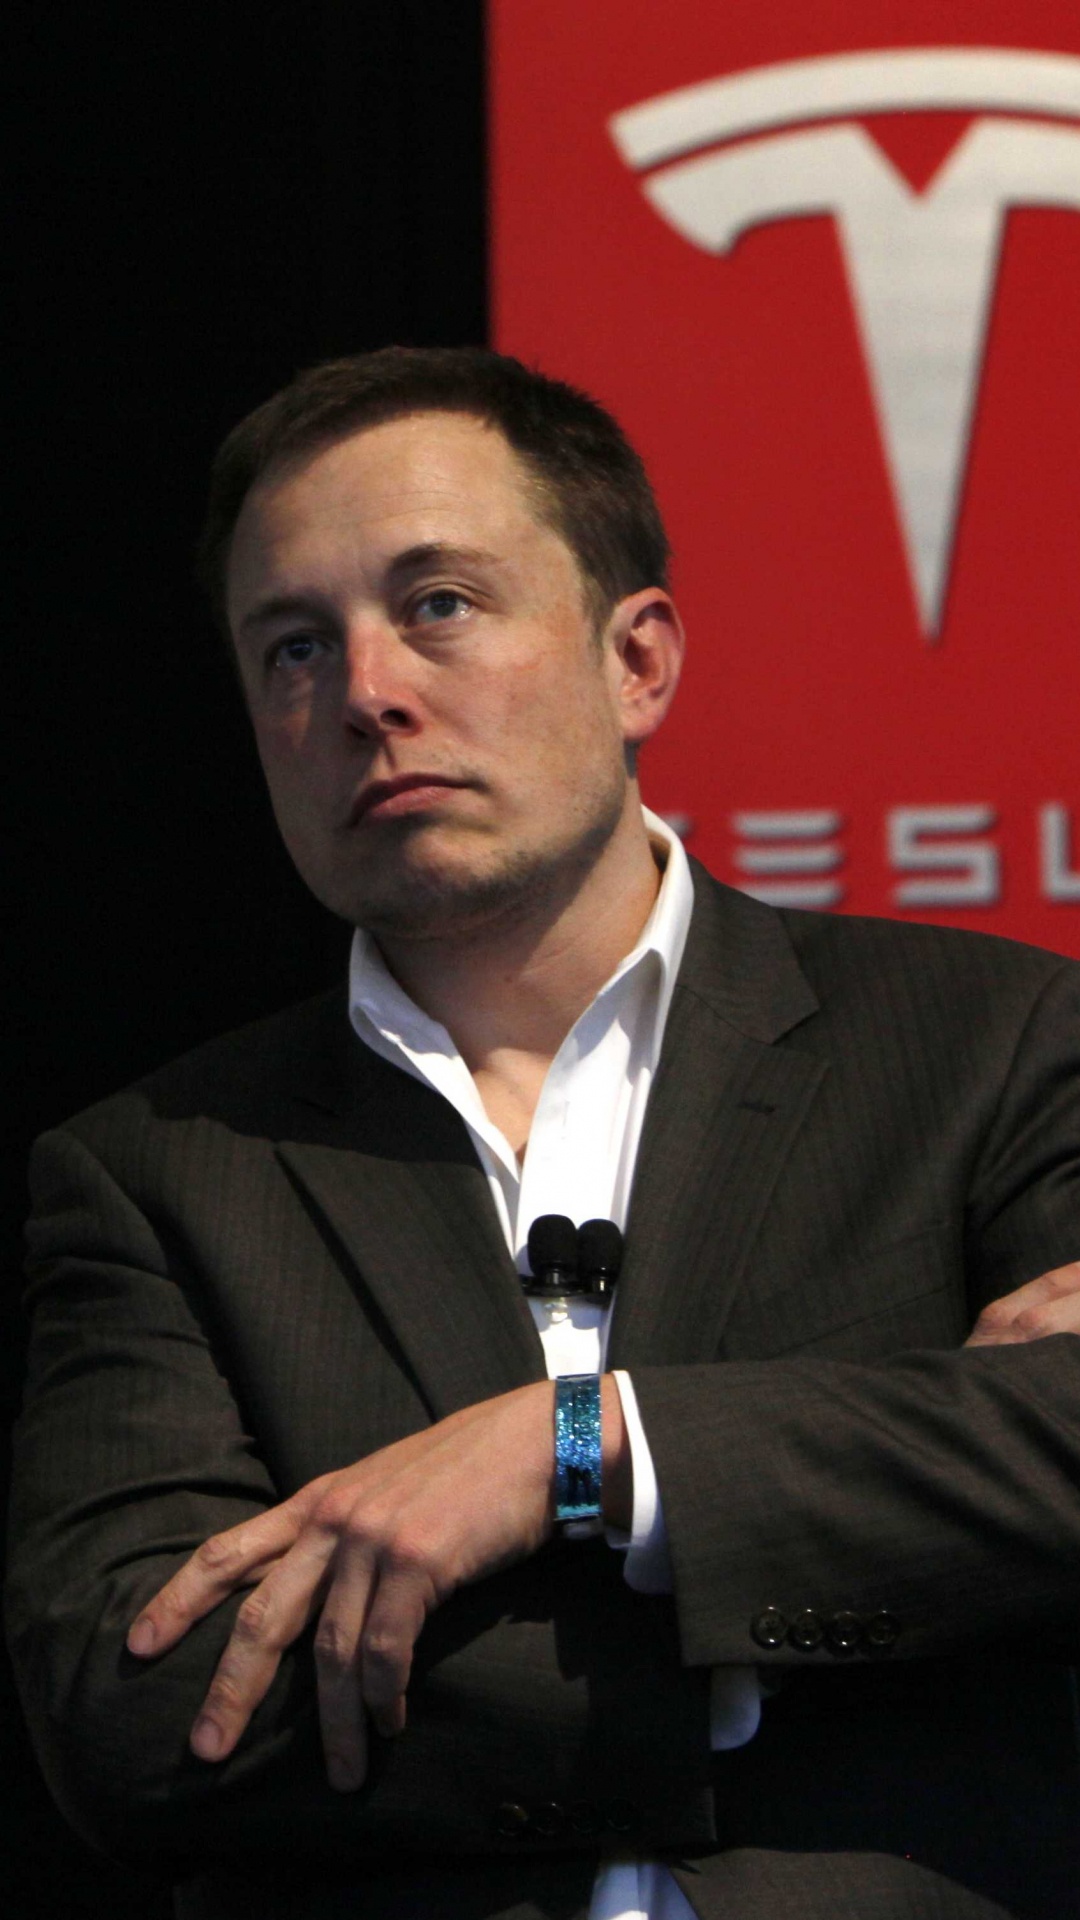 Elon Musk, Tesla Model S, Tesla Model X, Car, Public Speaking. Wallpaper in 1080x1920 Resolution